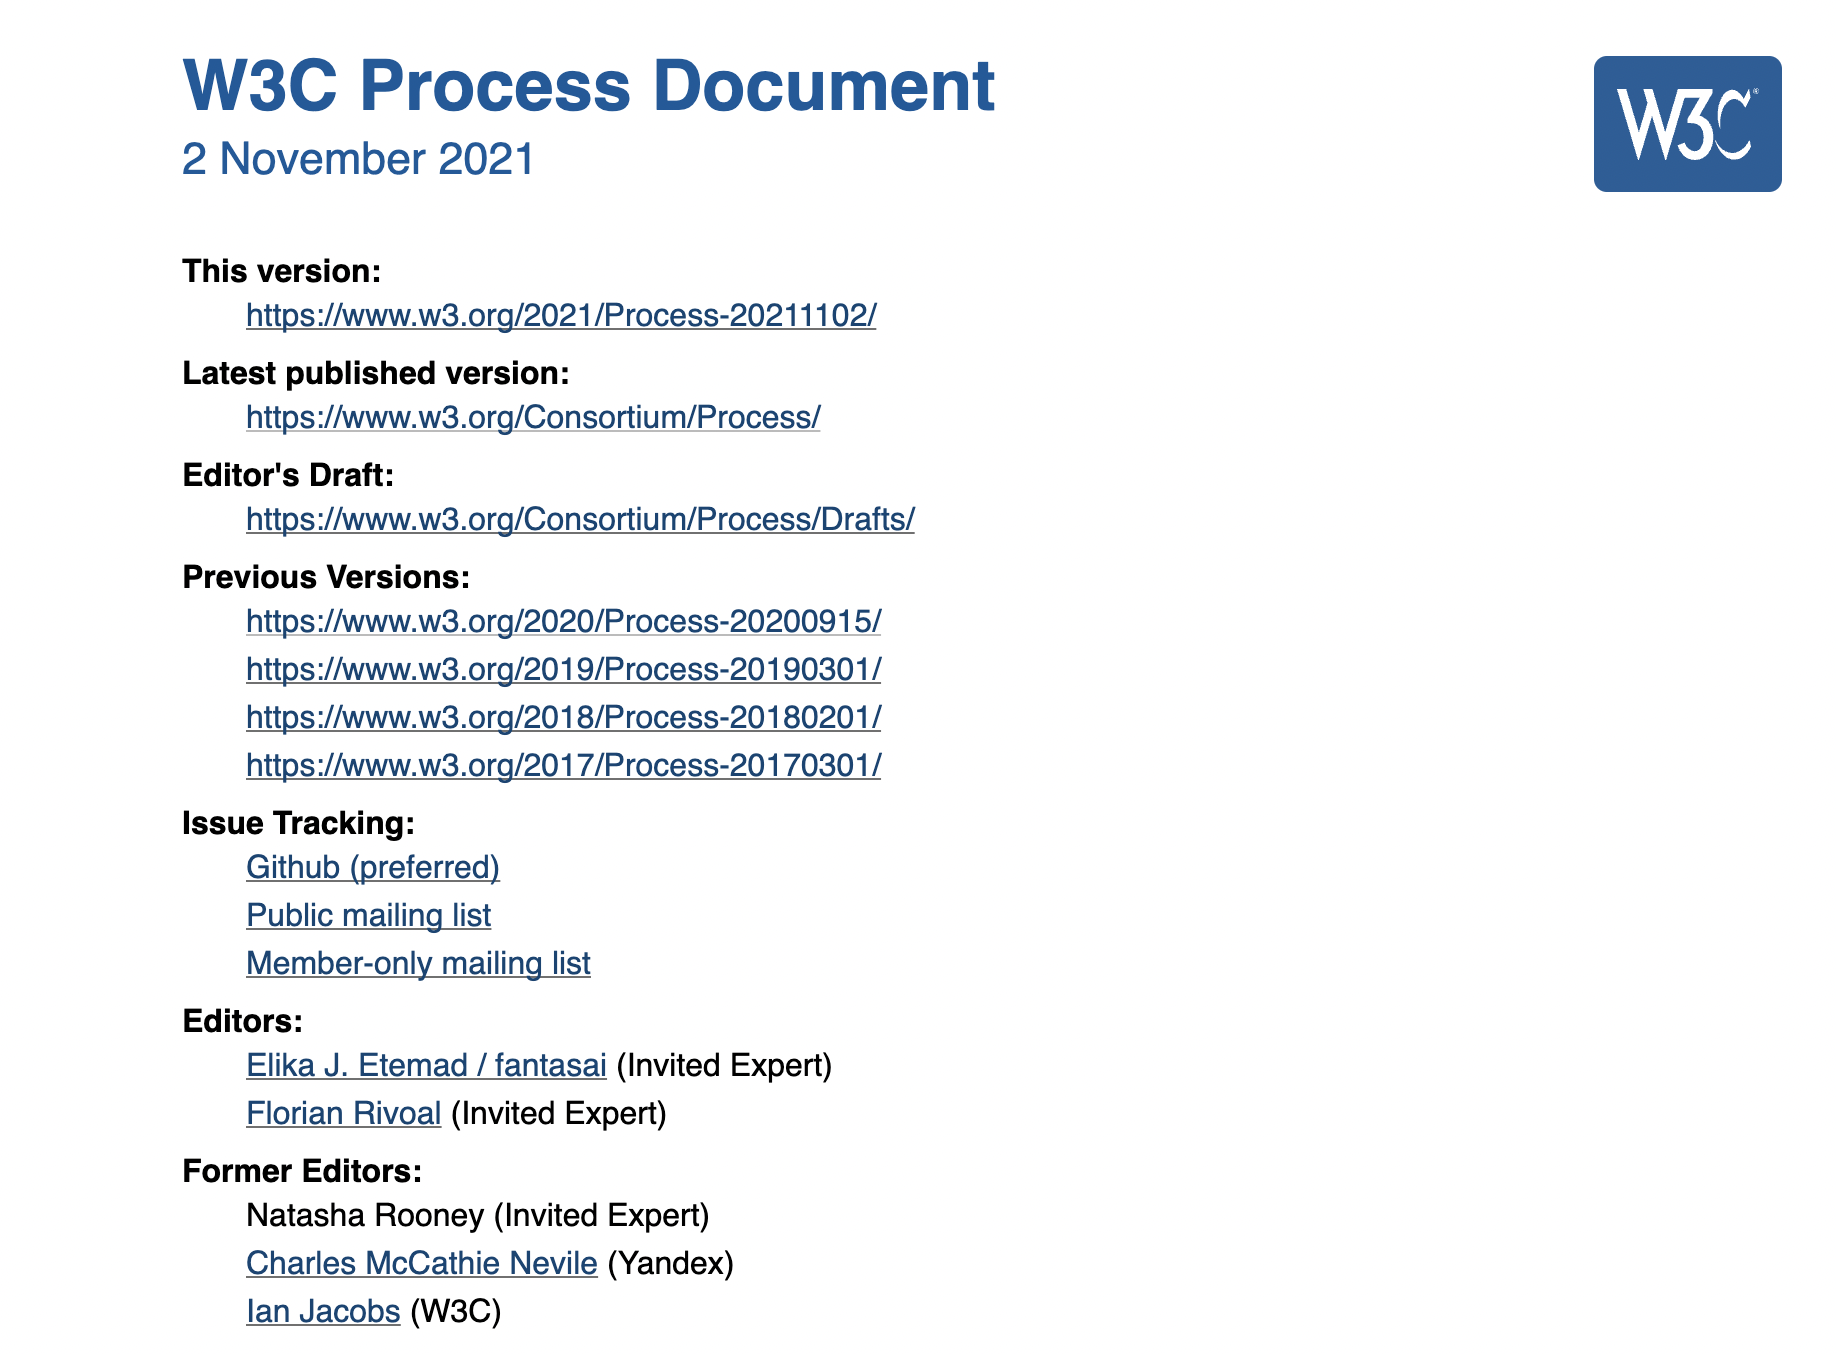 скриншот нового рабочего процесса W3C